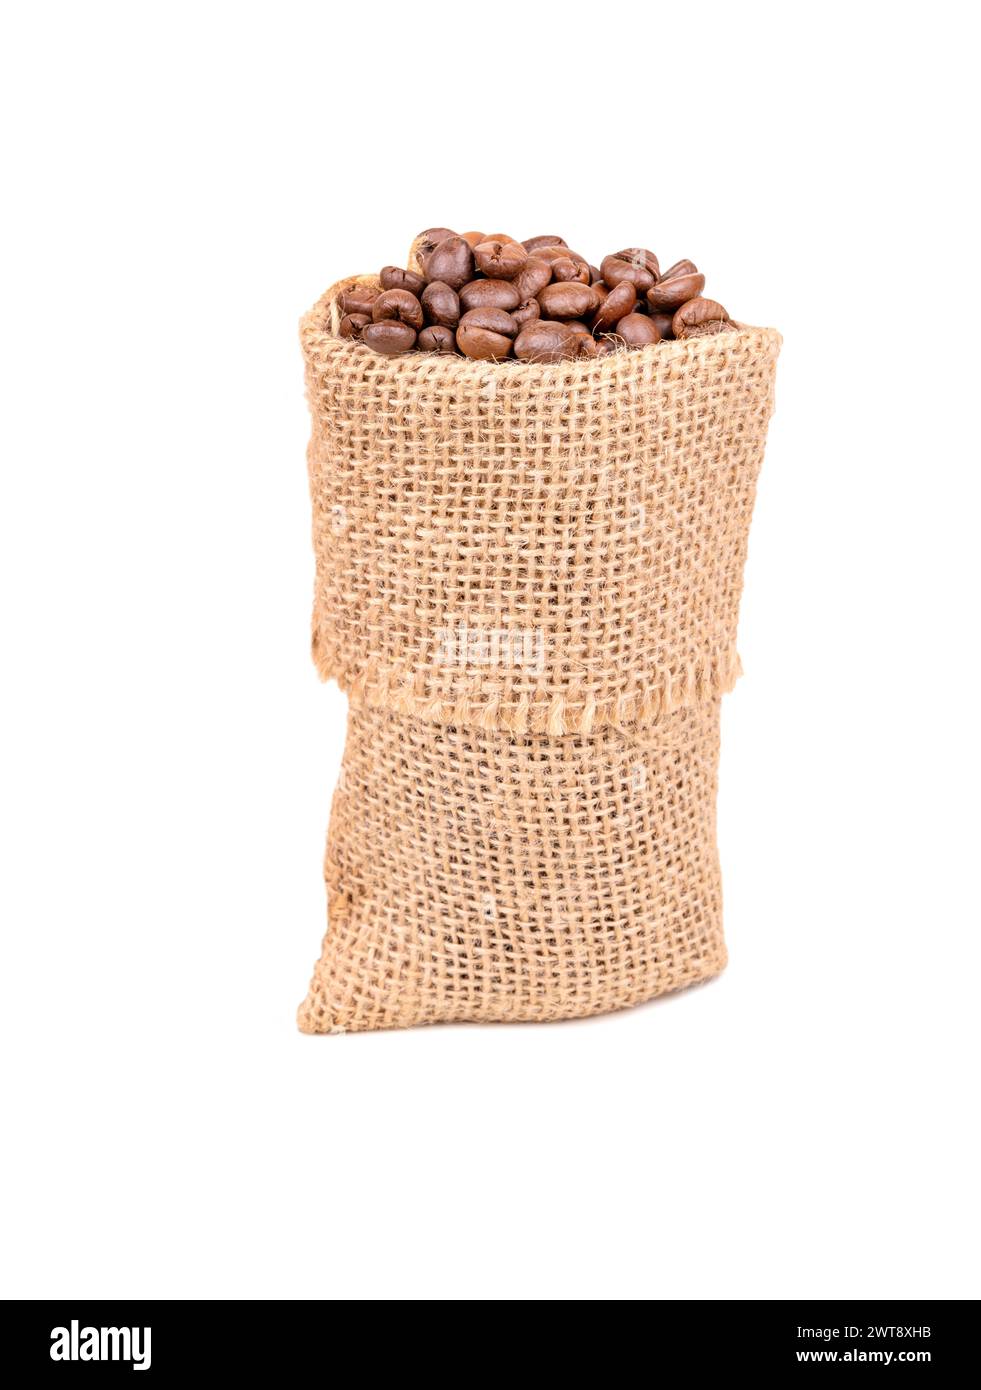 Petit sac en toile de jute avec des grains de café arabica torréfiés isolés sur fond blanc Banque D'Images